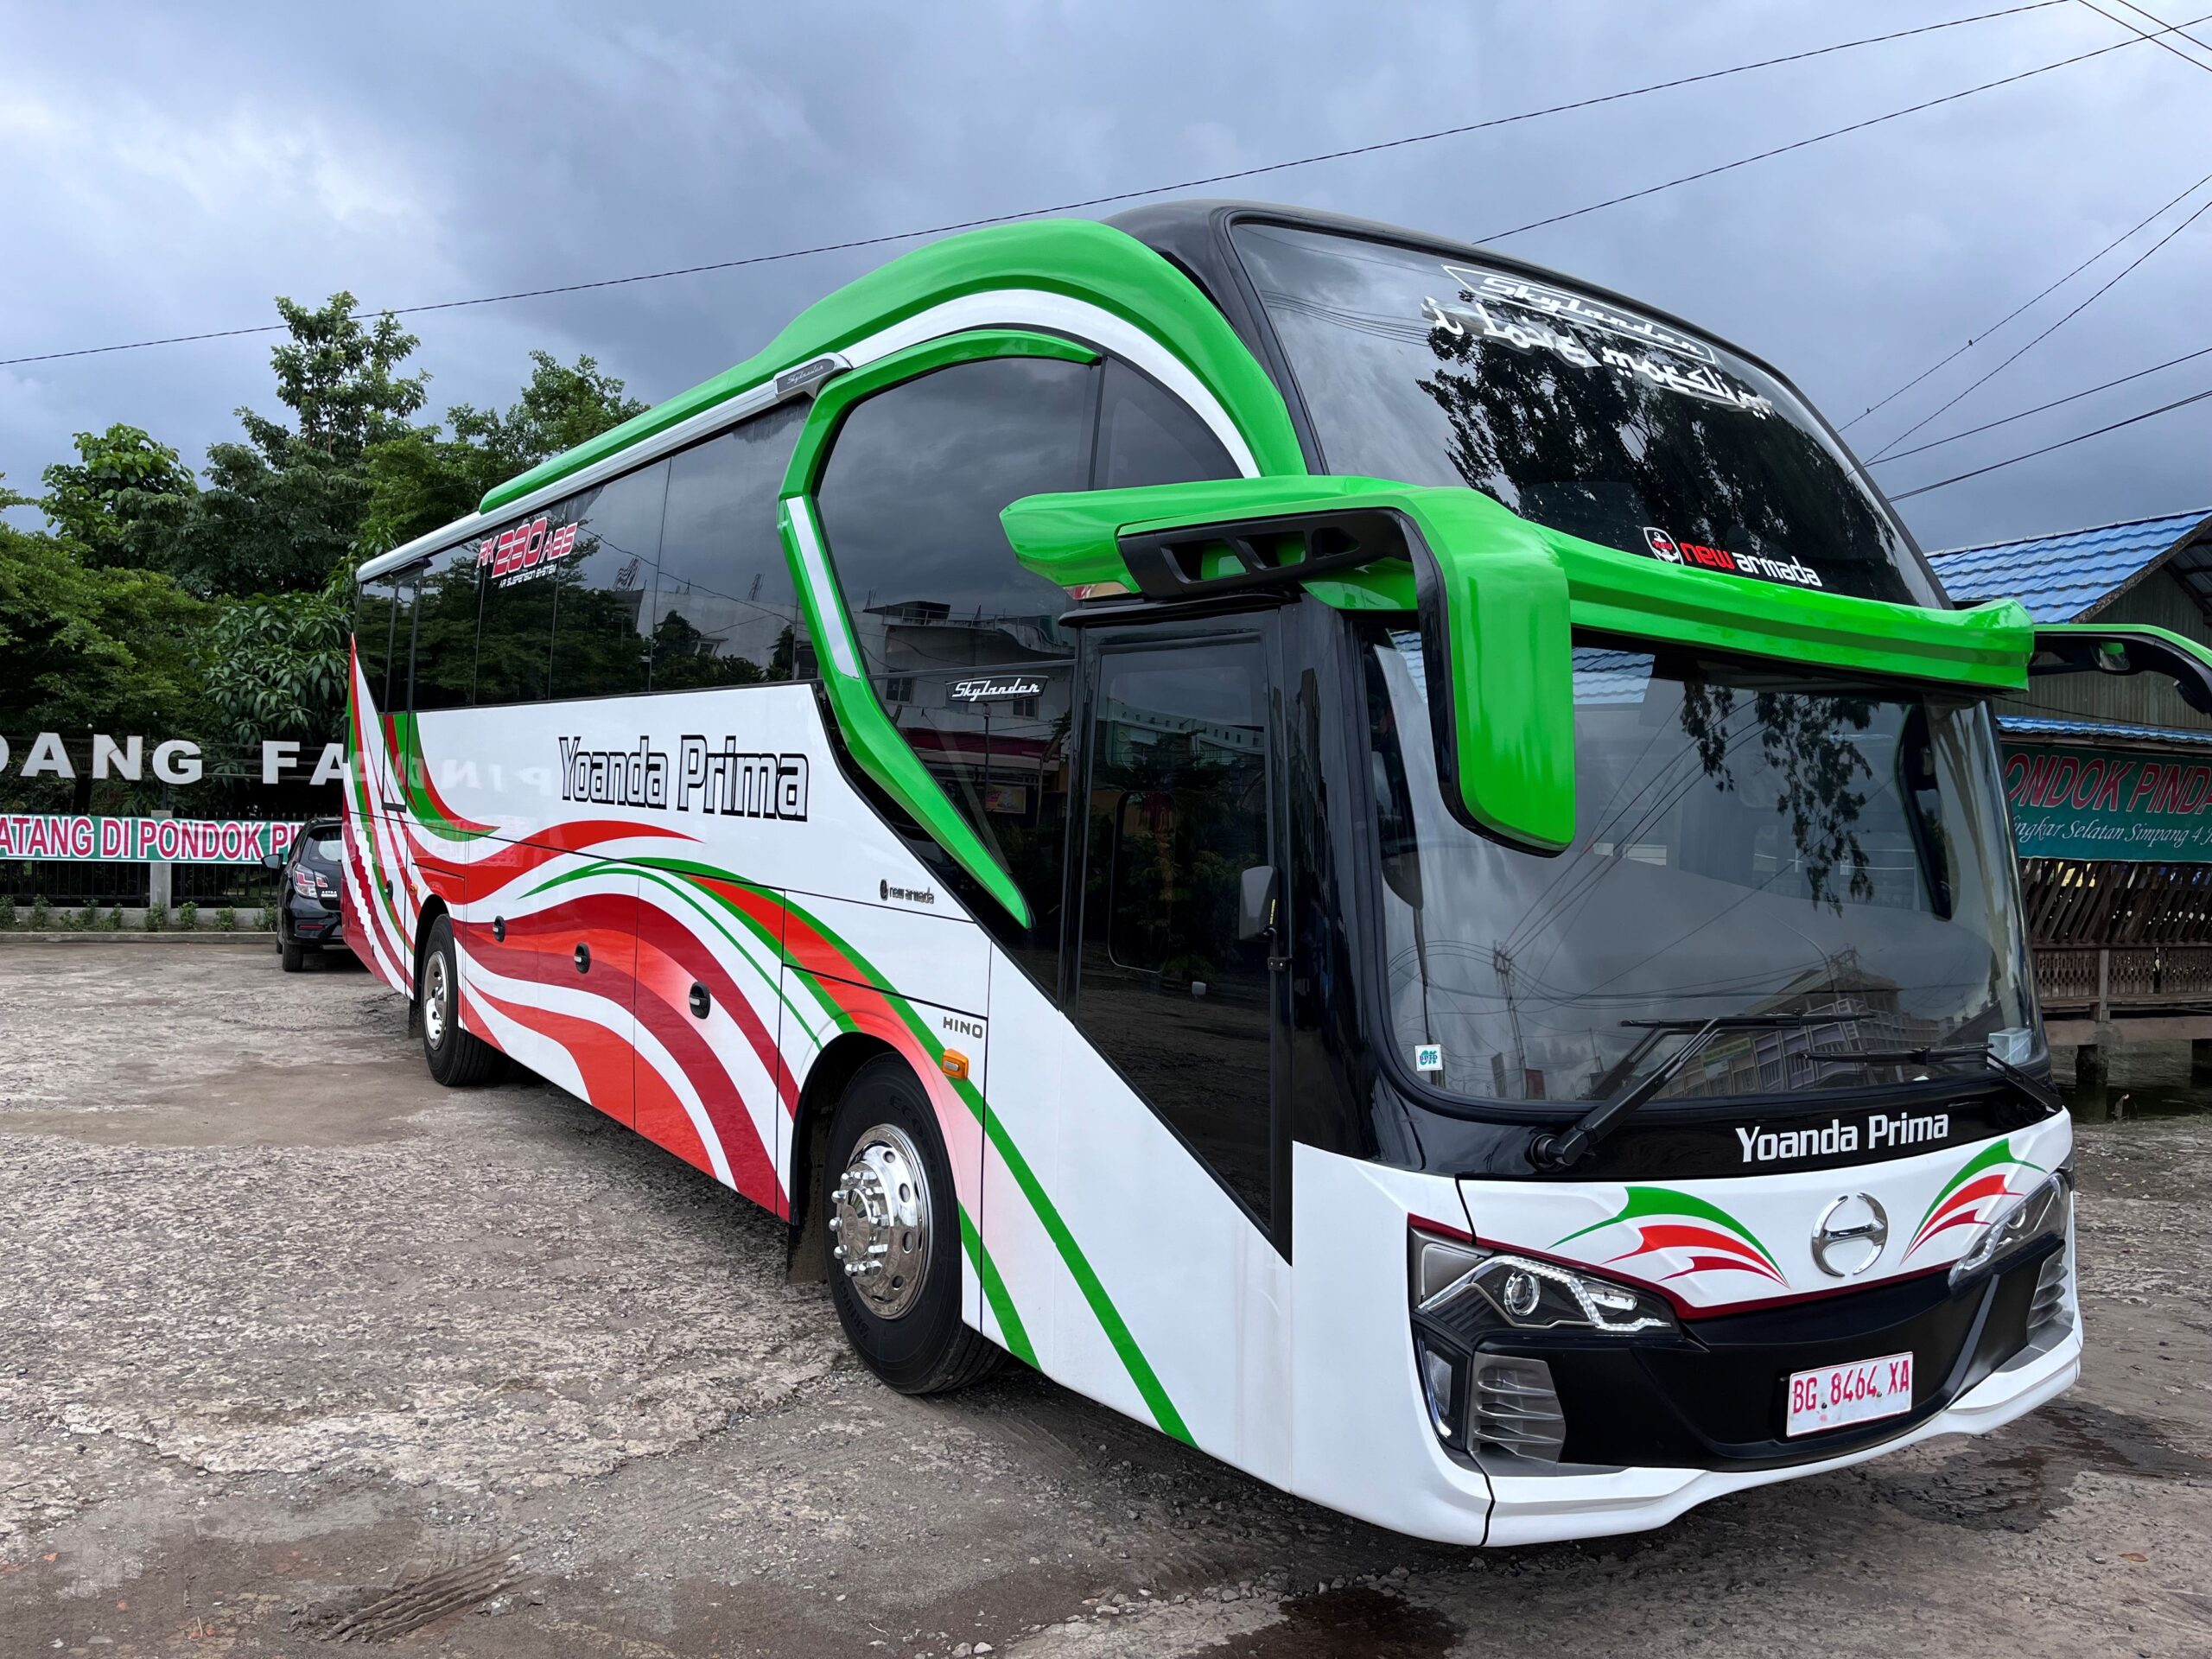 PO Yoanda Prima Rilis 2 Bus Baru, Sasis Hino Siap Libas Sumatra - apakabar.co.id